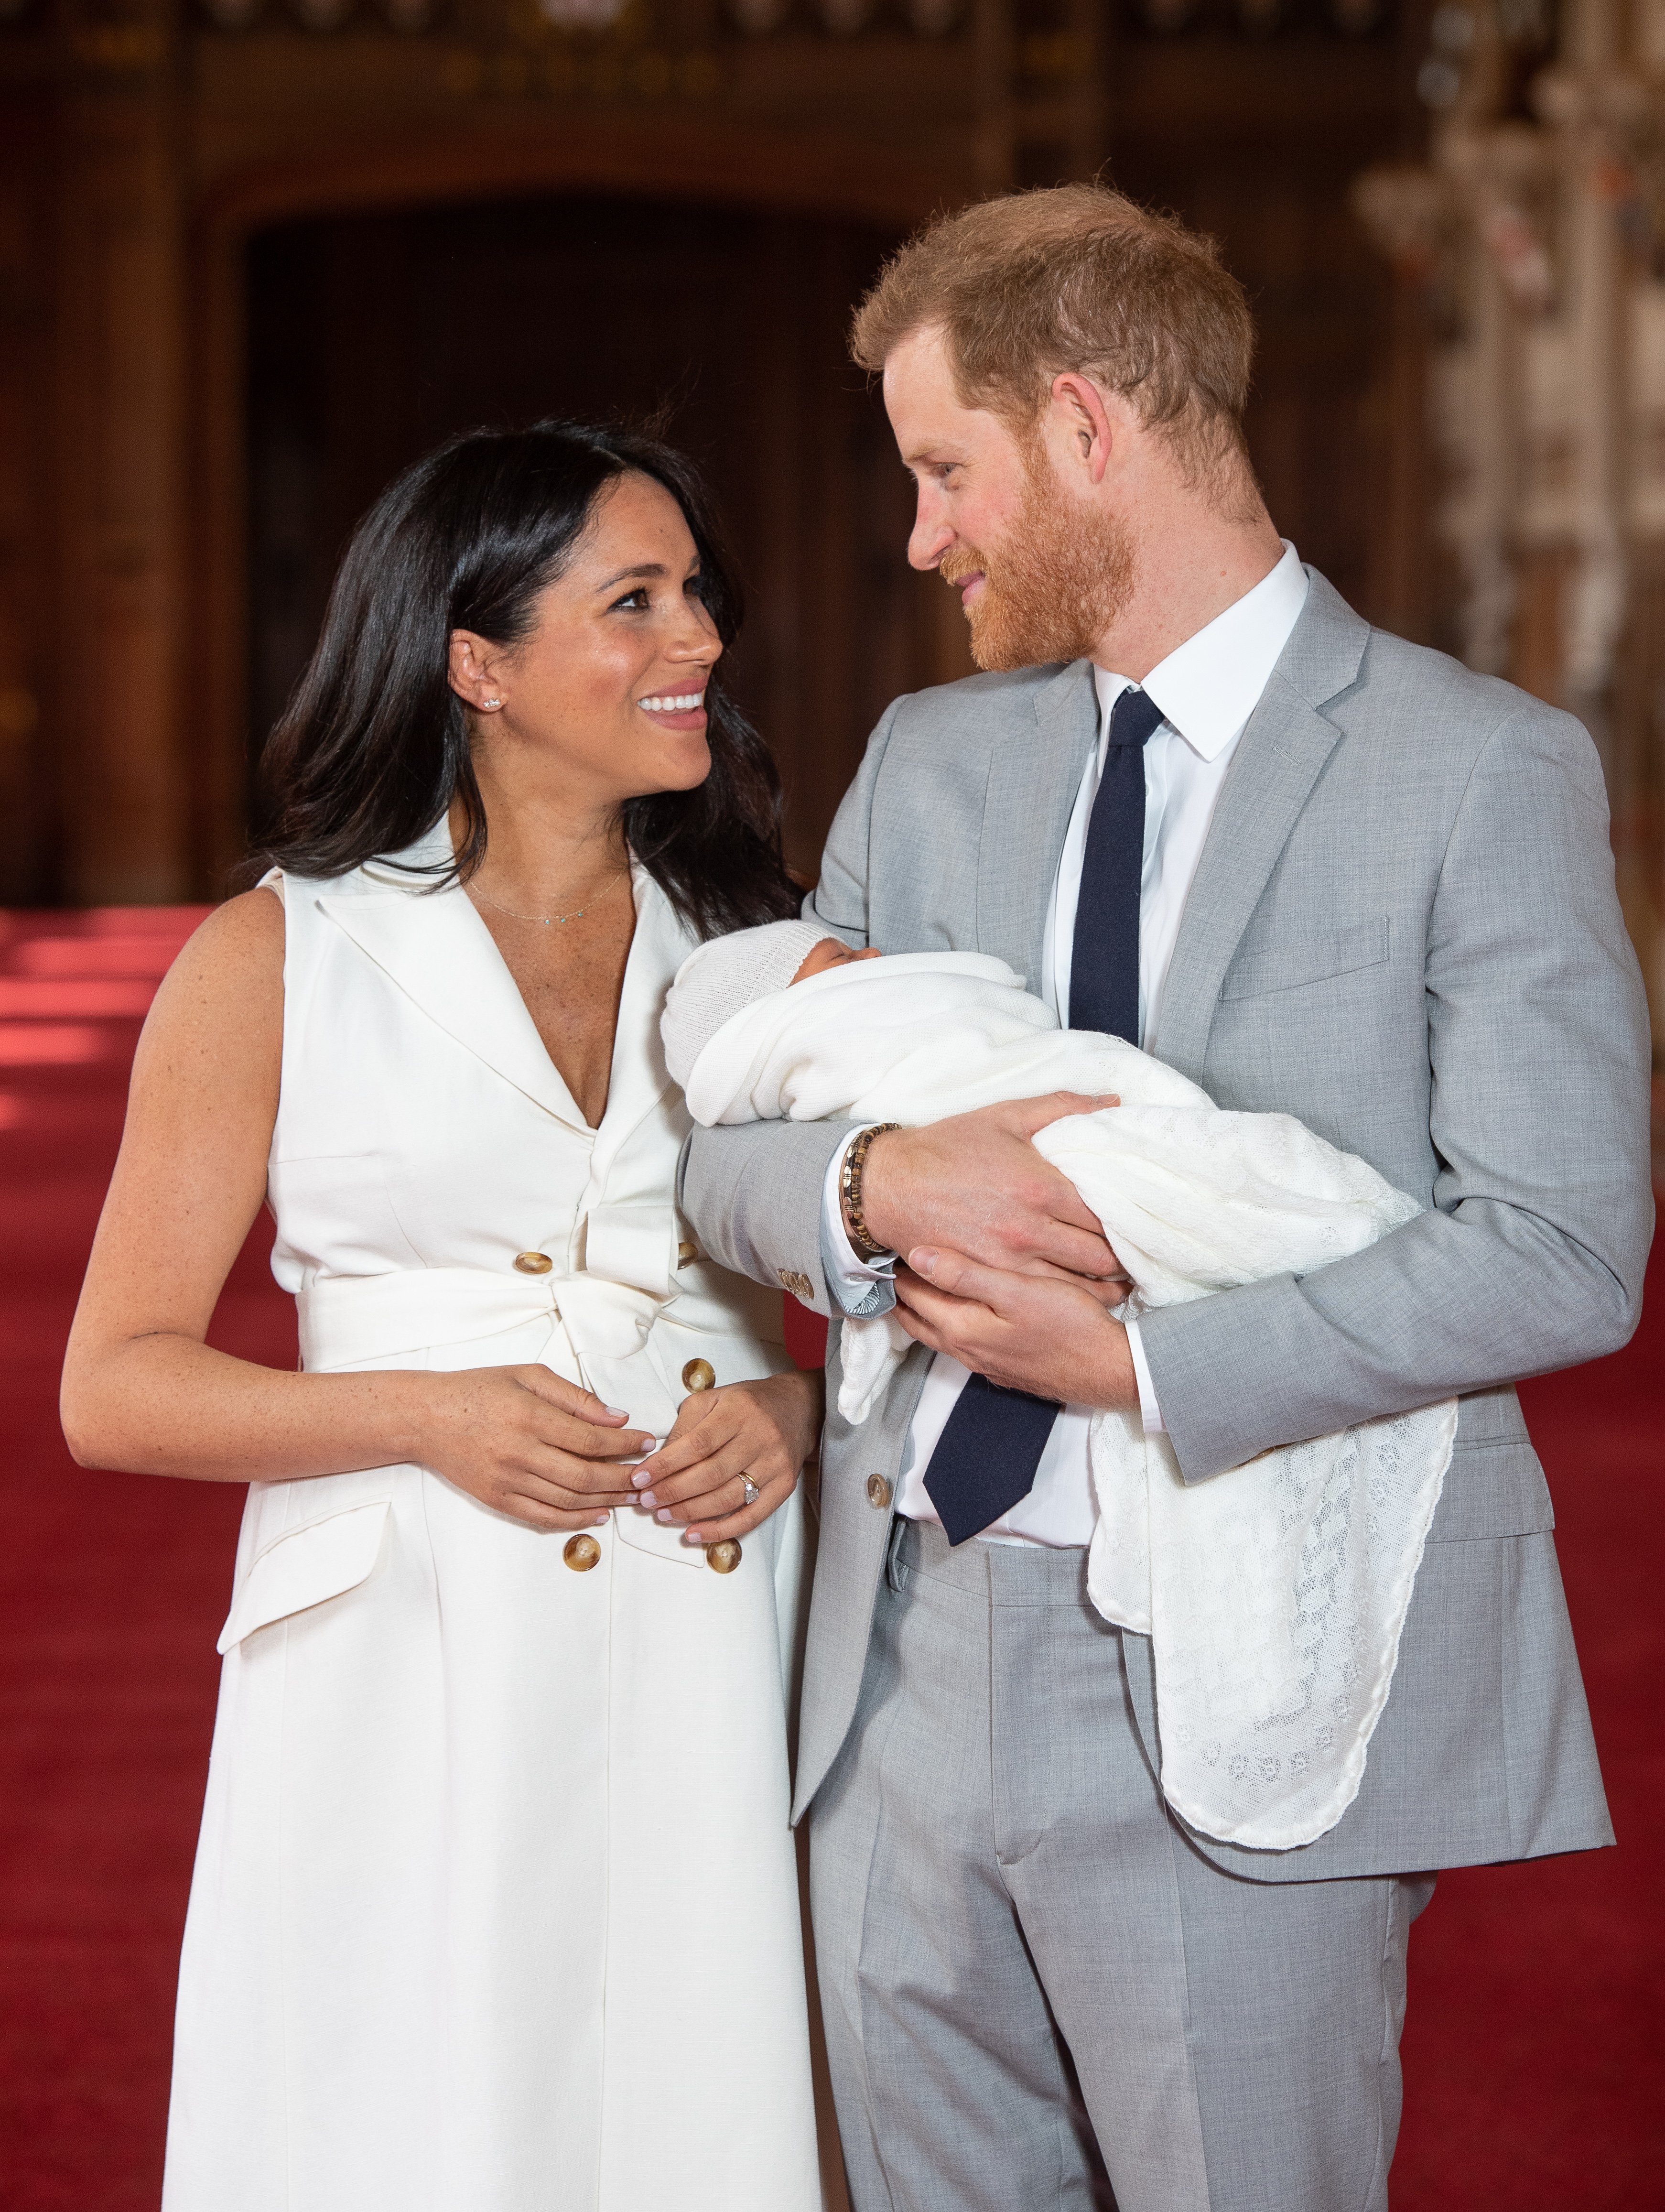 El príncipe Harry y Meghan Markle posan con su hijo recién nacido Archie Harrison Mountbatten-Windsor el 8 de mayo de 2019 en Windsor, Inglaterra. | Foto: Getty Images 